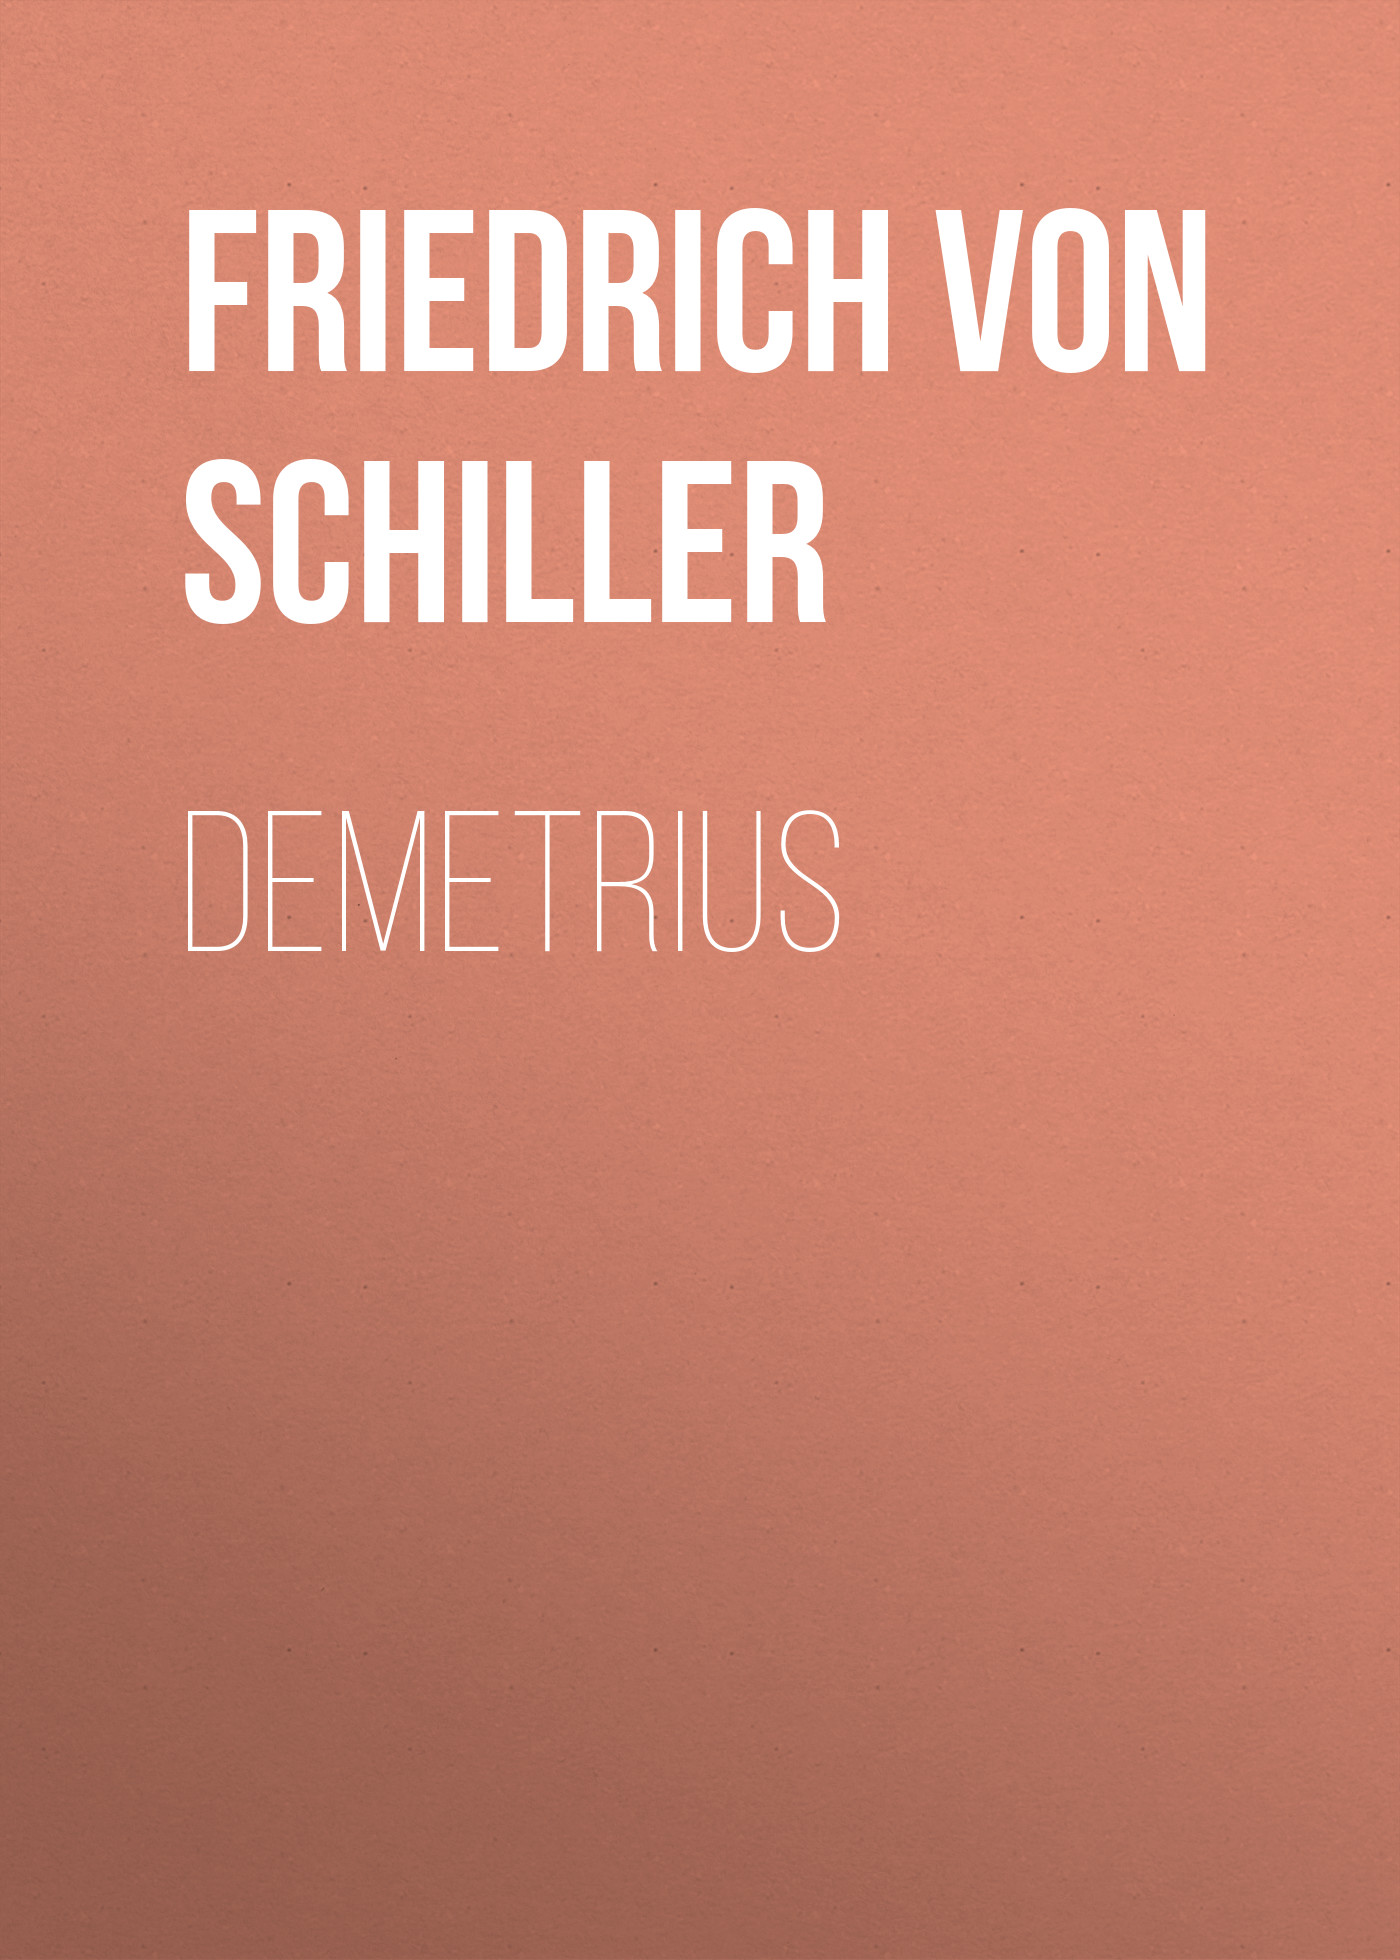 Книга Demetrius из серии , созданная Friedrich Schiller, может относится к жанру Литература 18 века, Поэзия, Зарубежная старинная литература, Зарубежная классика, Зарубежные стихи. Стоимость электронной книги Demetrius с идентификатором 25449916 составляет 0 руб.